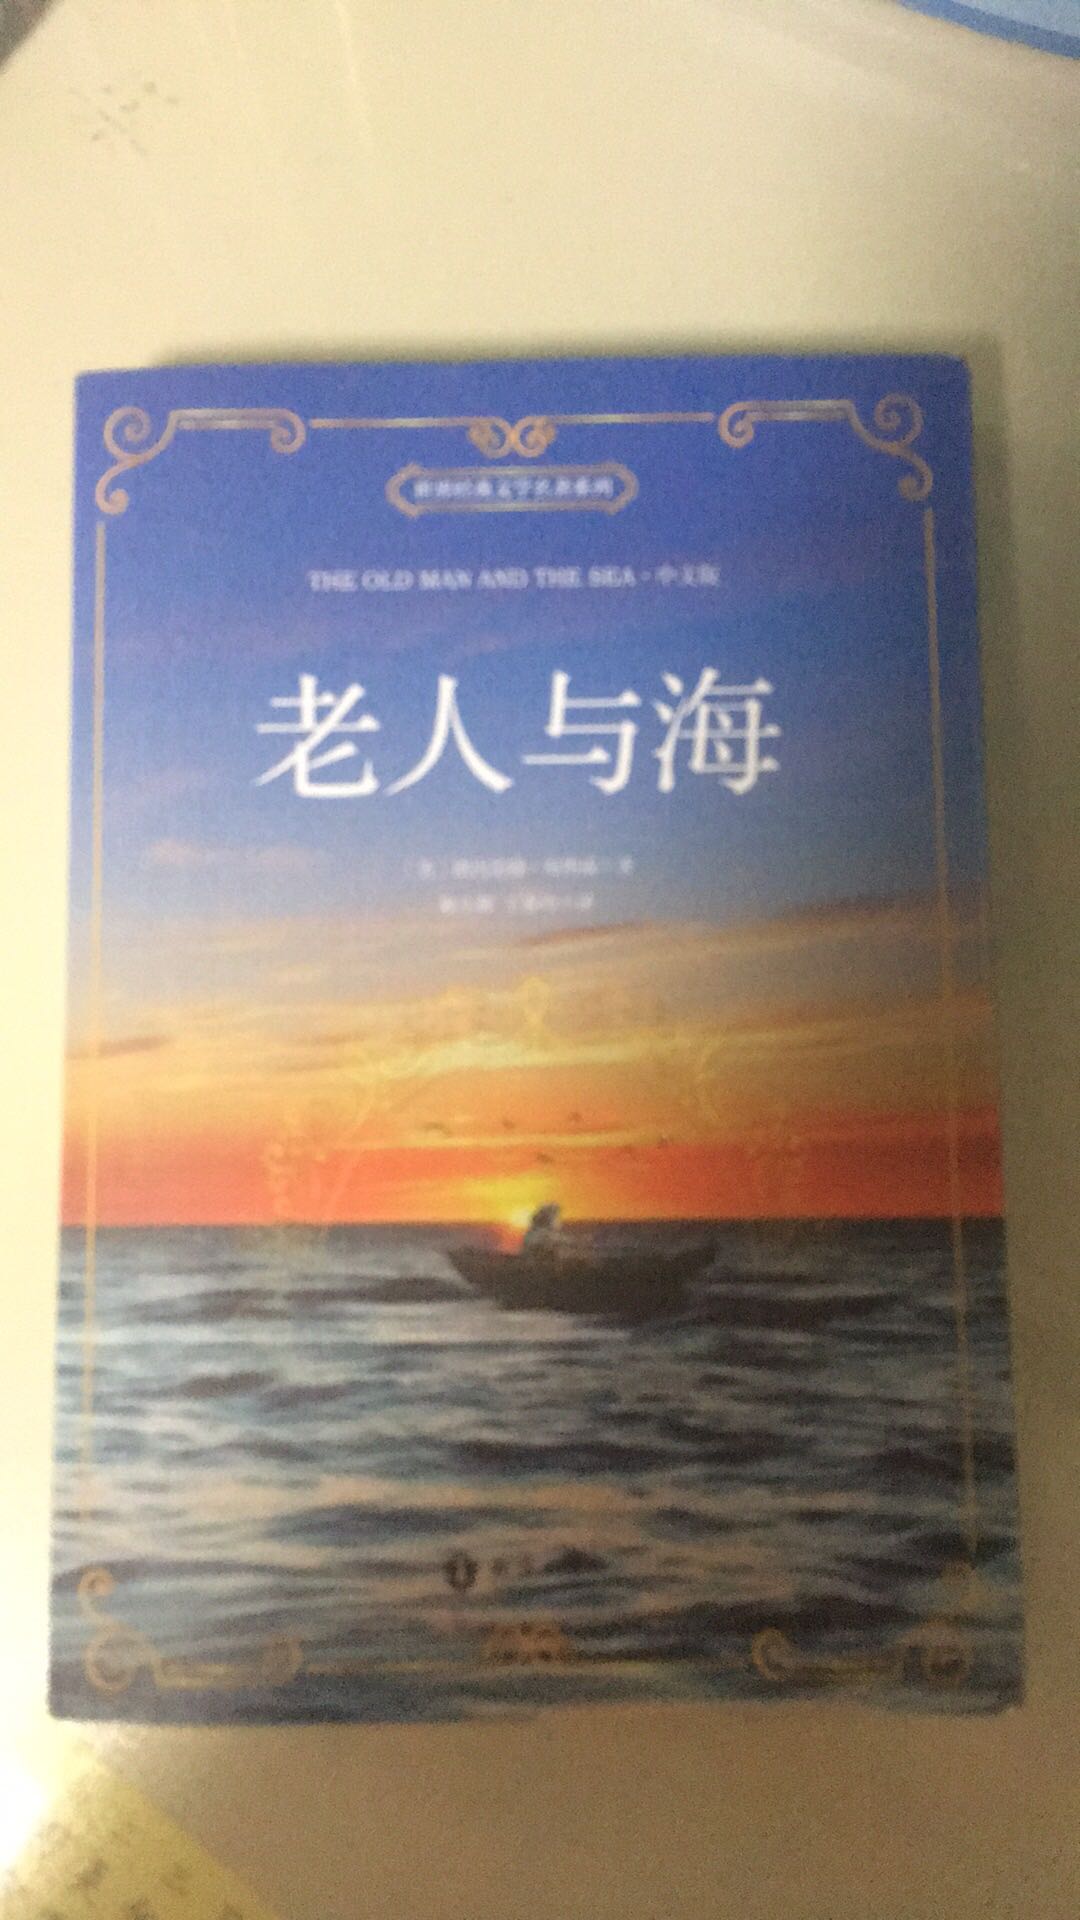 中英文对照的老人与海，适合中学生的读物！